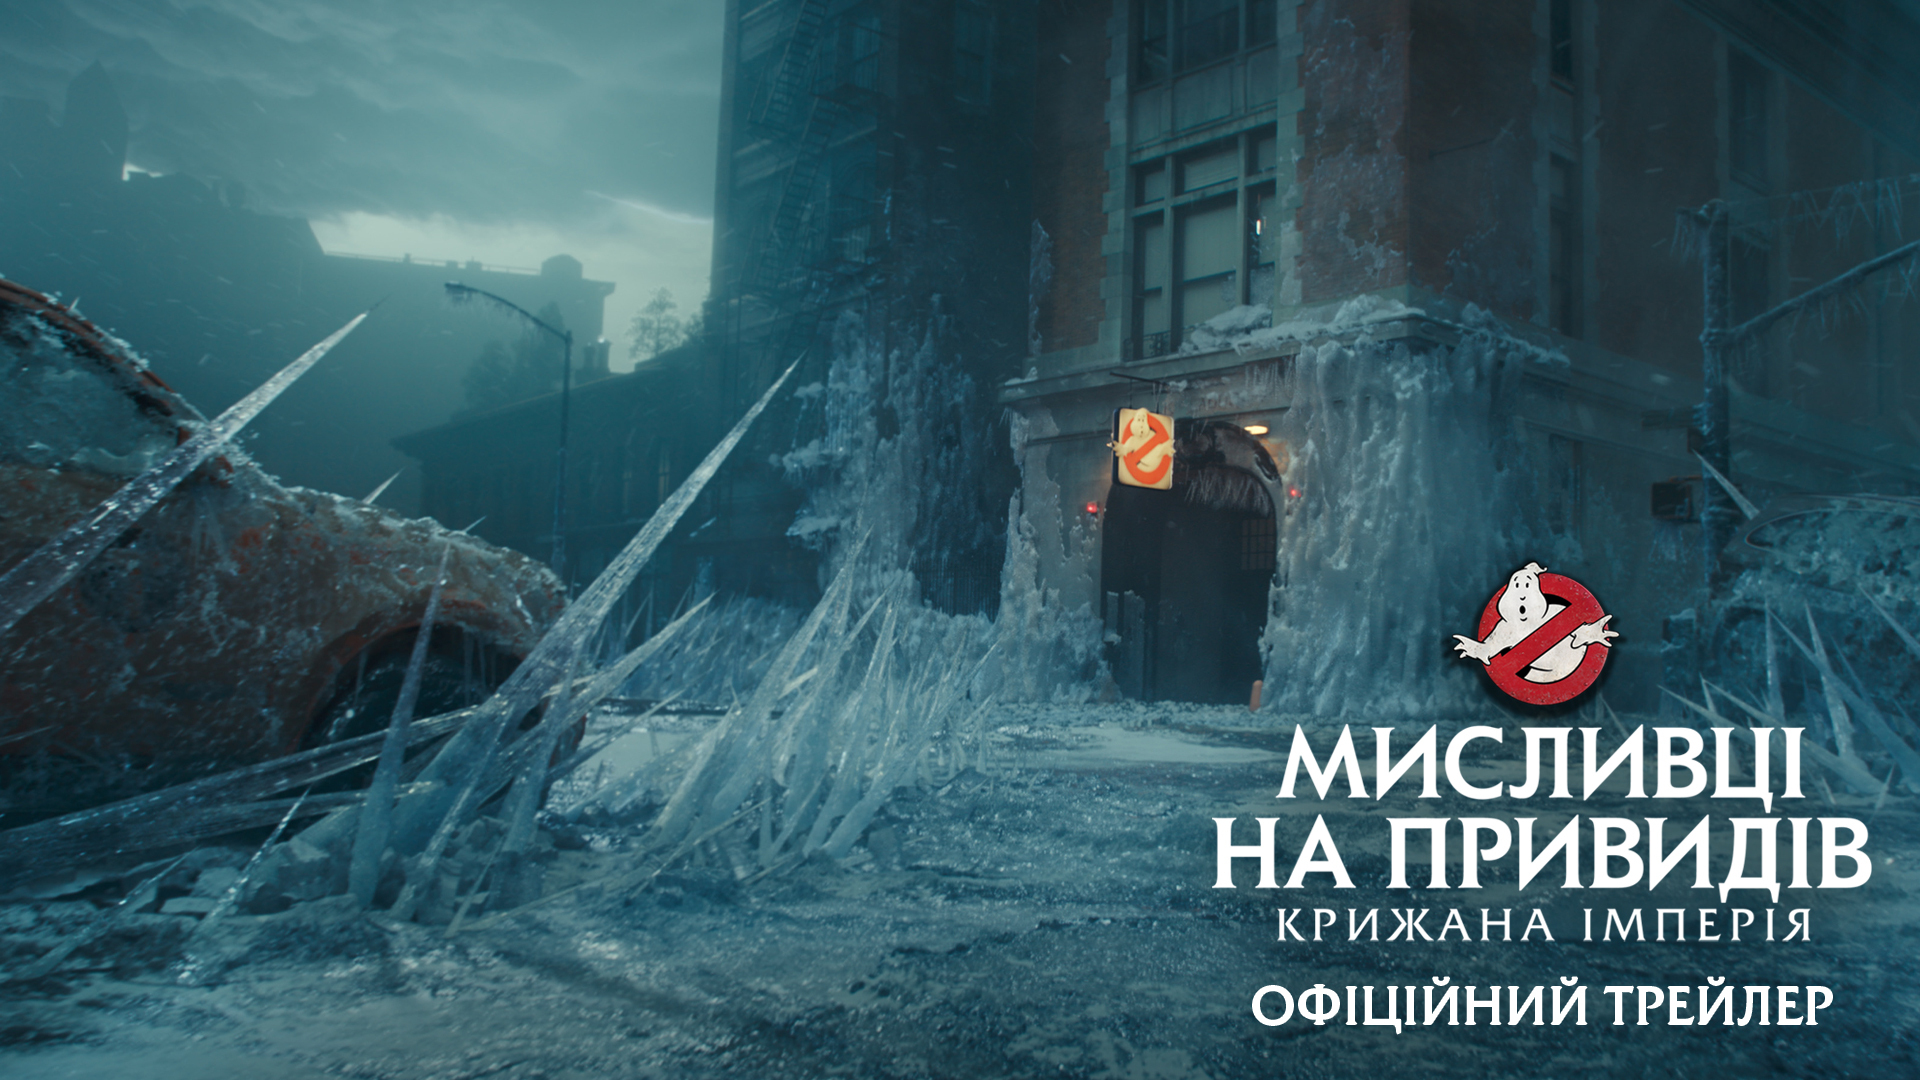 Sony Pictures презентує  офіційний трейлер фільму "Мисливці на привидів: Крижана імперія"